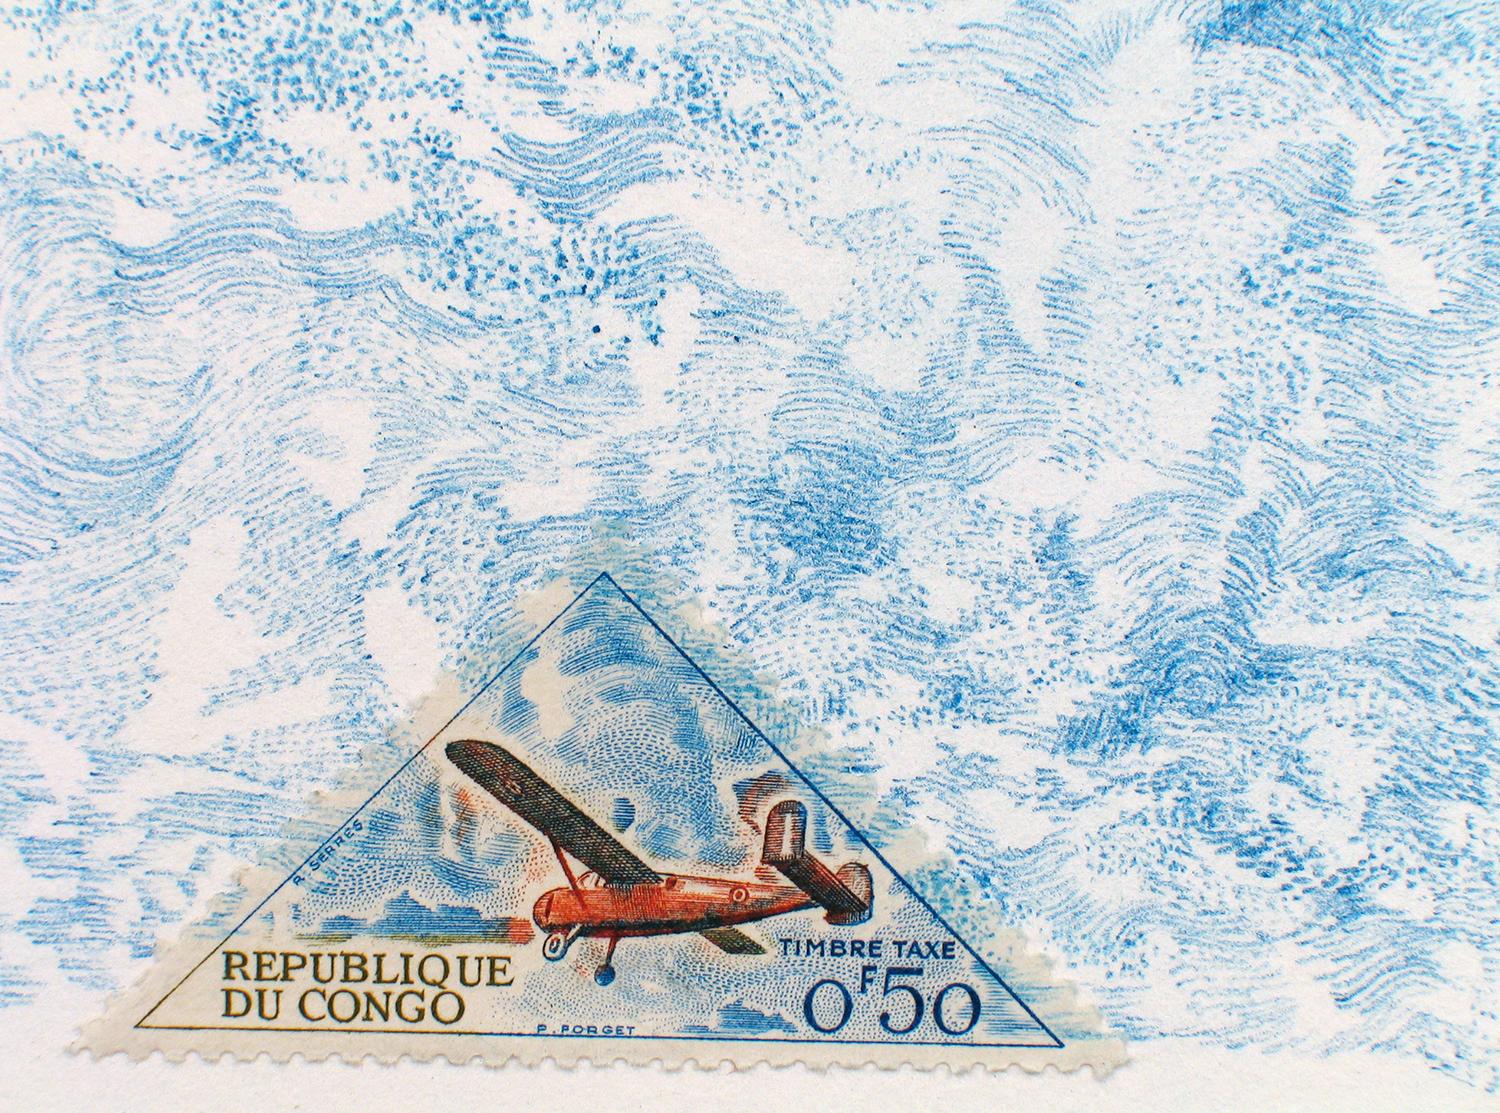 Republique du Congo (Wind): Pastel Blue Colored Pencil Drawing & Plane Stamp